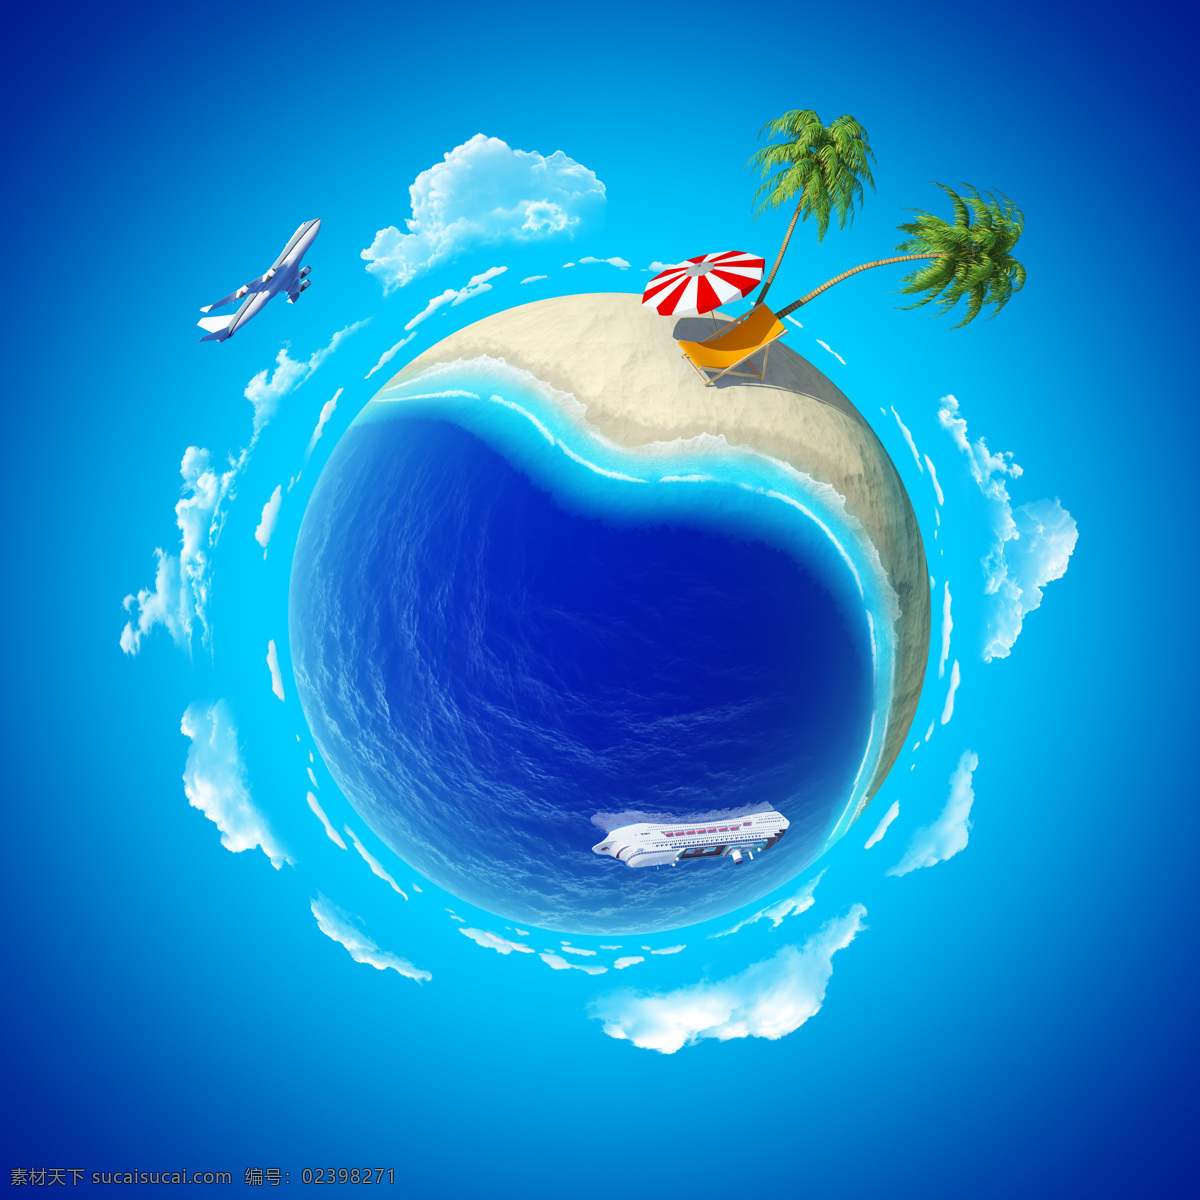 蓝色 地球 海洋 椰子树 背景 飞机 云朵 时尚花纹 立体背景 简约时尚背景 底纹背景 底纹边框 花纹边框 地球图片 环境家居